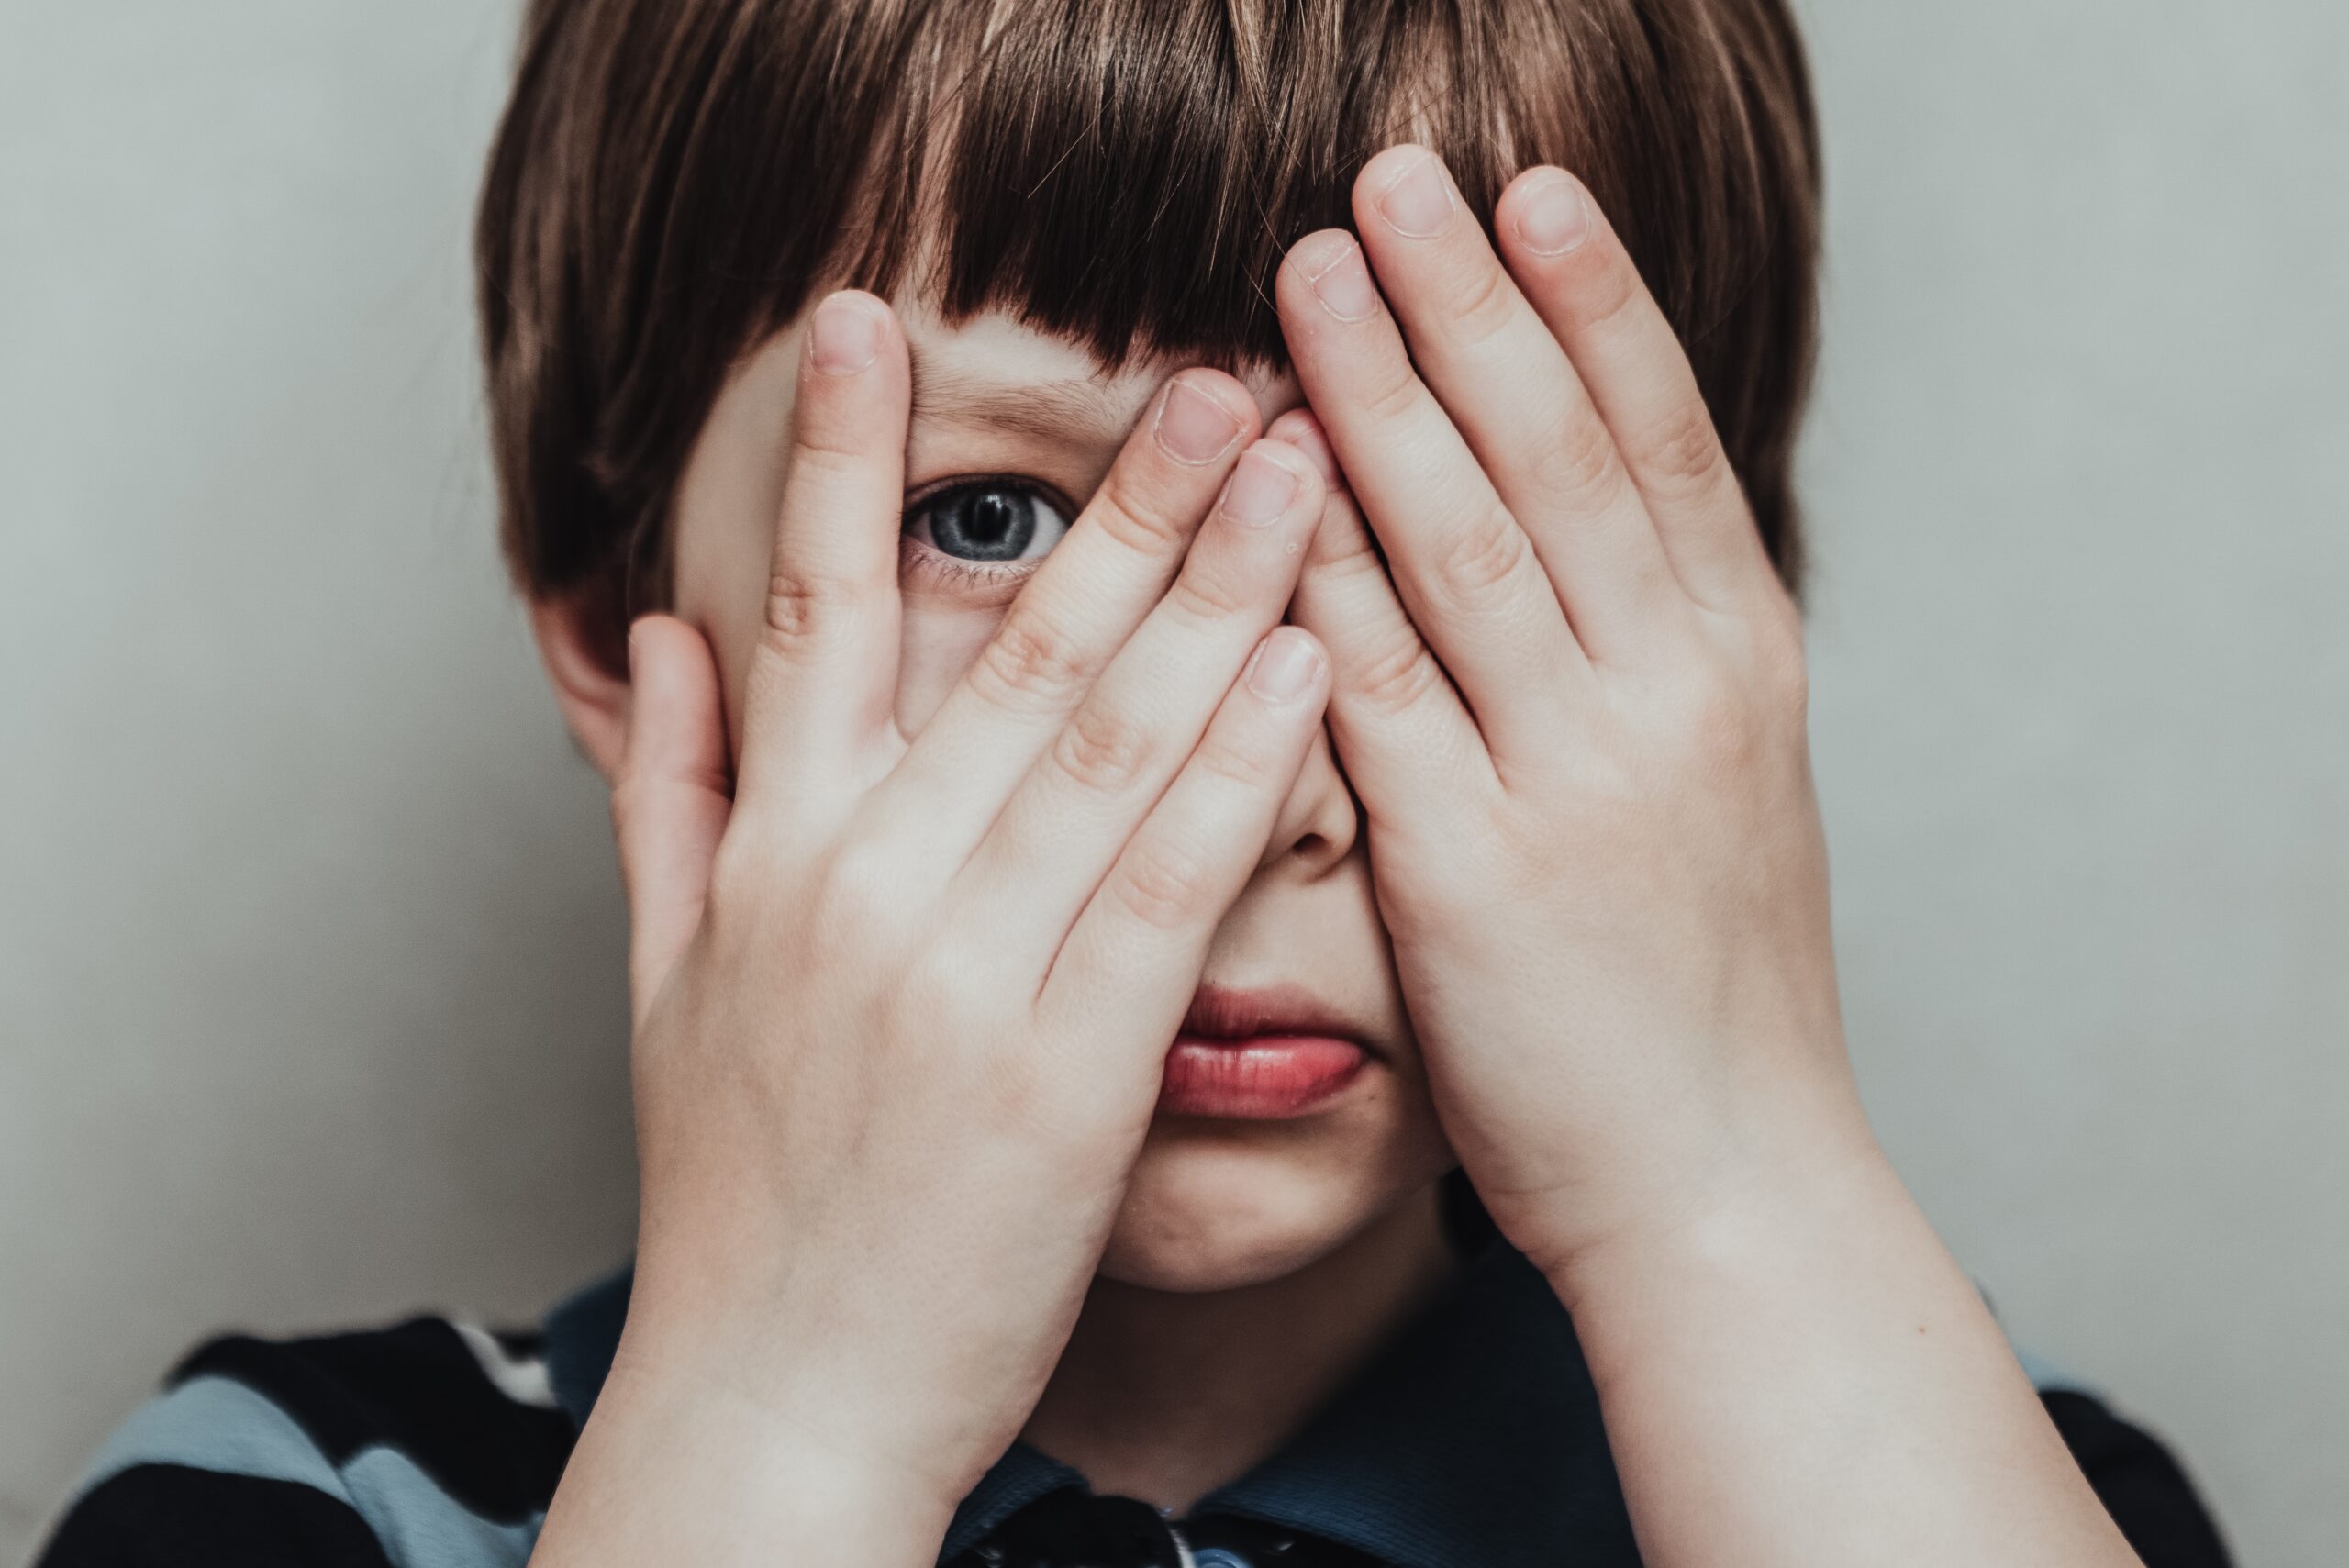 Otizmli Çocukların Göz Teması Kurmasına Yardımcı Olmak İçin 4 İpucu